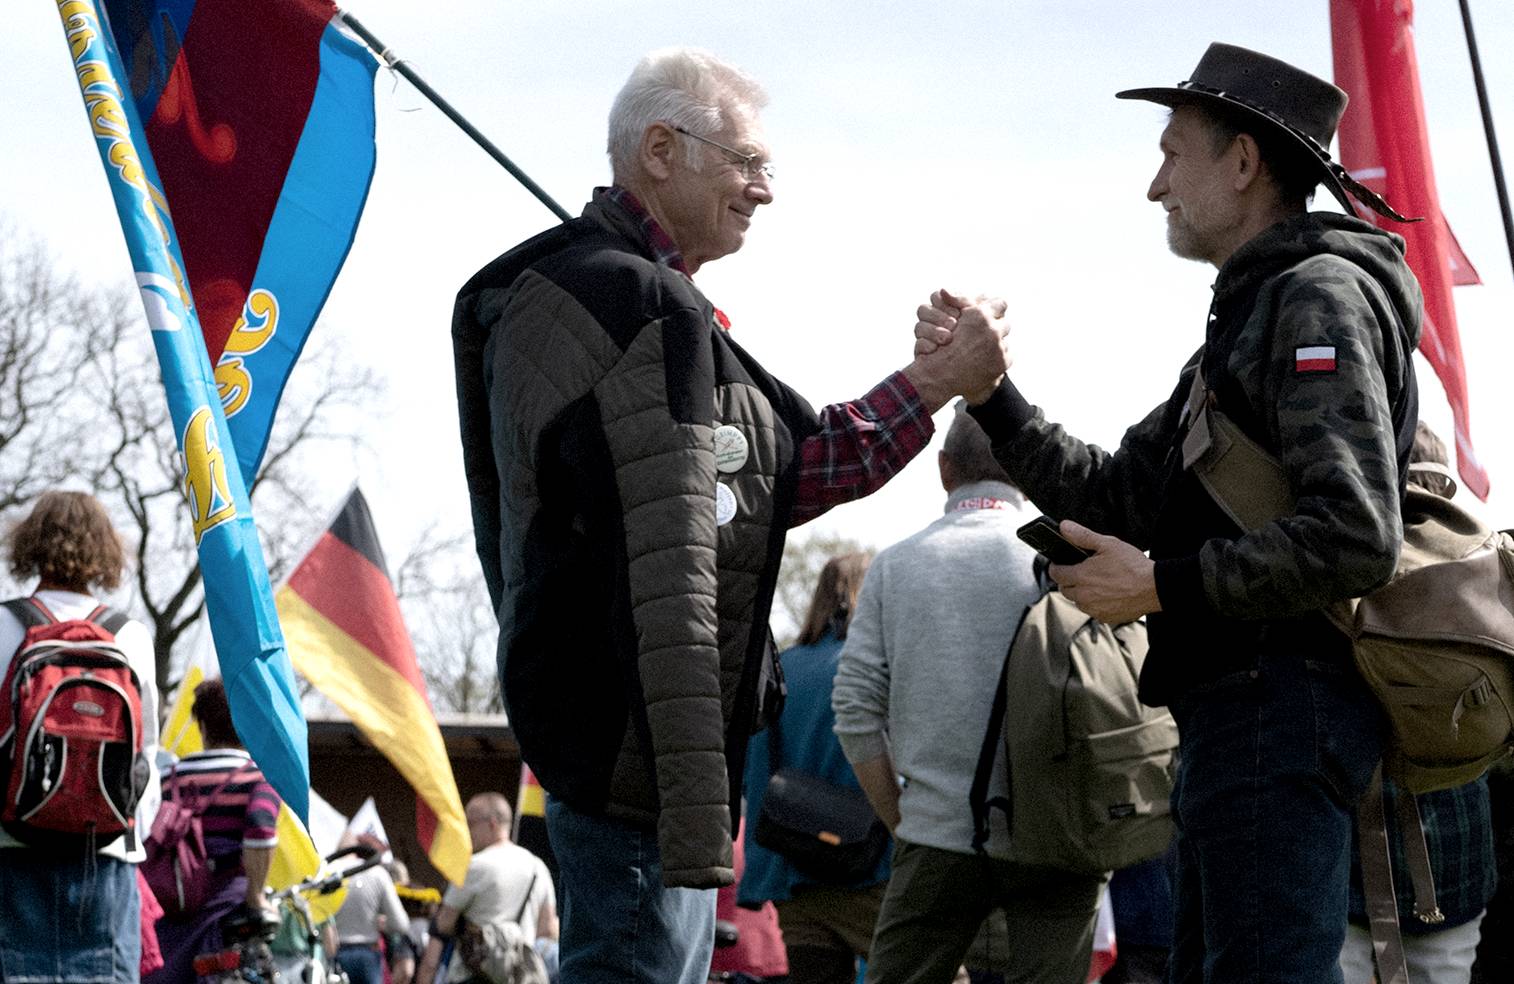 Dwóch mężczyzn trzyma dłonie w przyjacielskim uścisku, jeden z nich trzyma flagę, na pierwszym planie osoba leży na trawie, w tle tłum osób